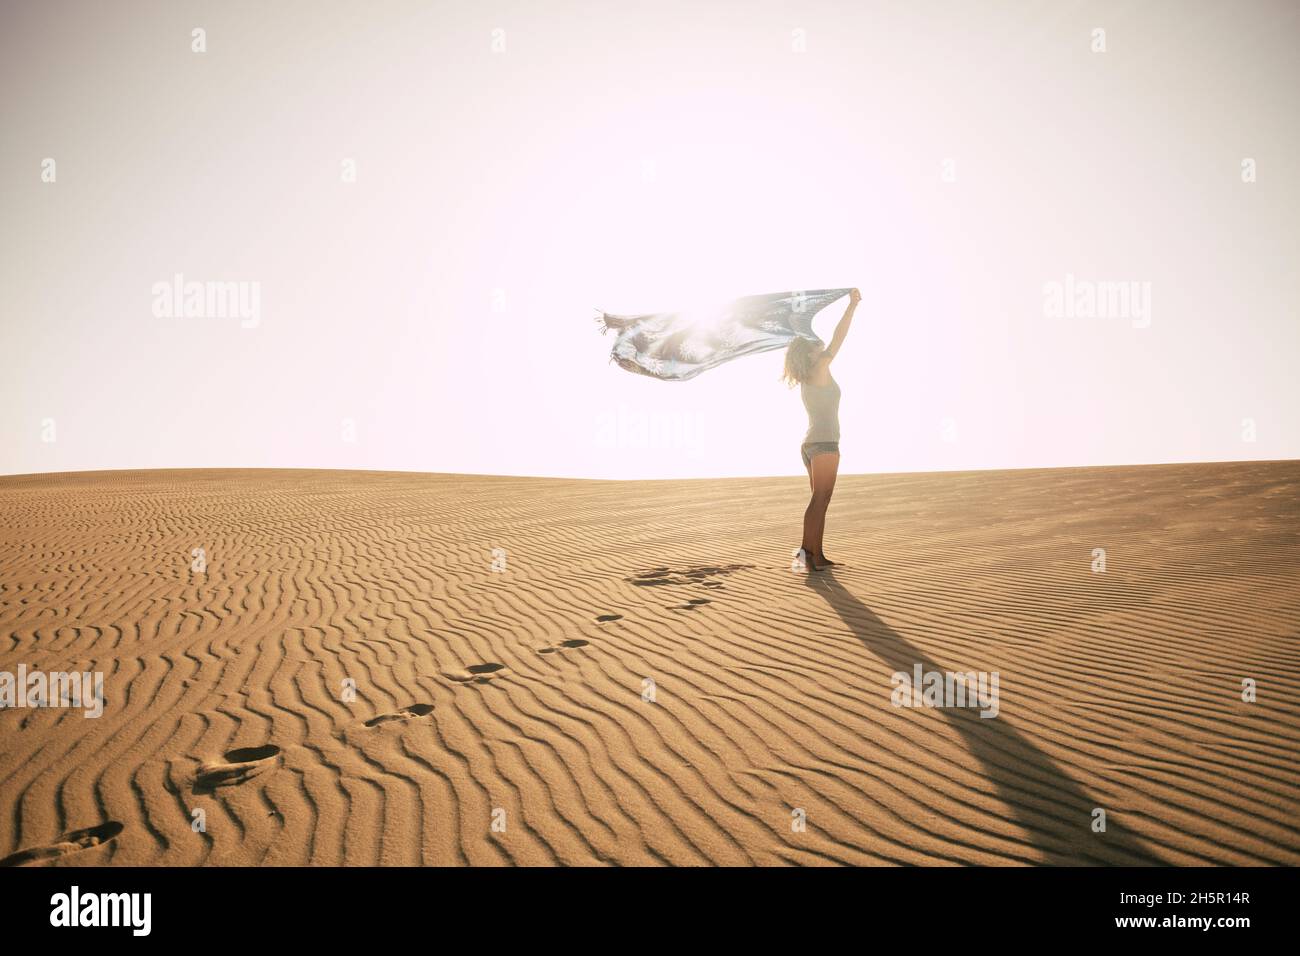 Femme debout contre le soleil sur une dune du désert.Concept de l'homme et de la liberté.Voyage aventure style de vie avec femme mince et ciel lumineux dans backgrou Banque D'Images